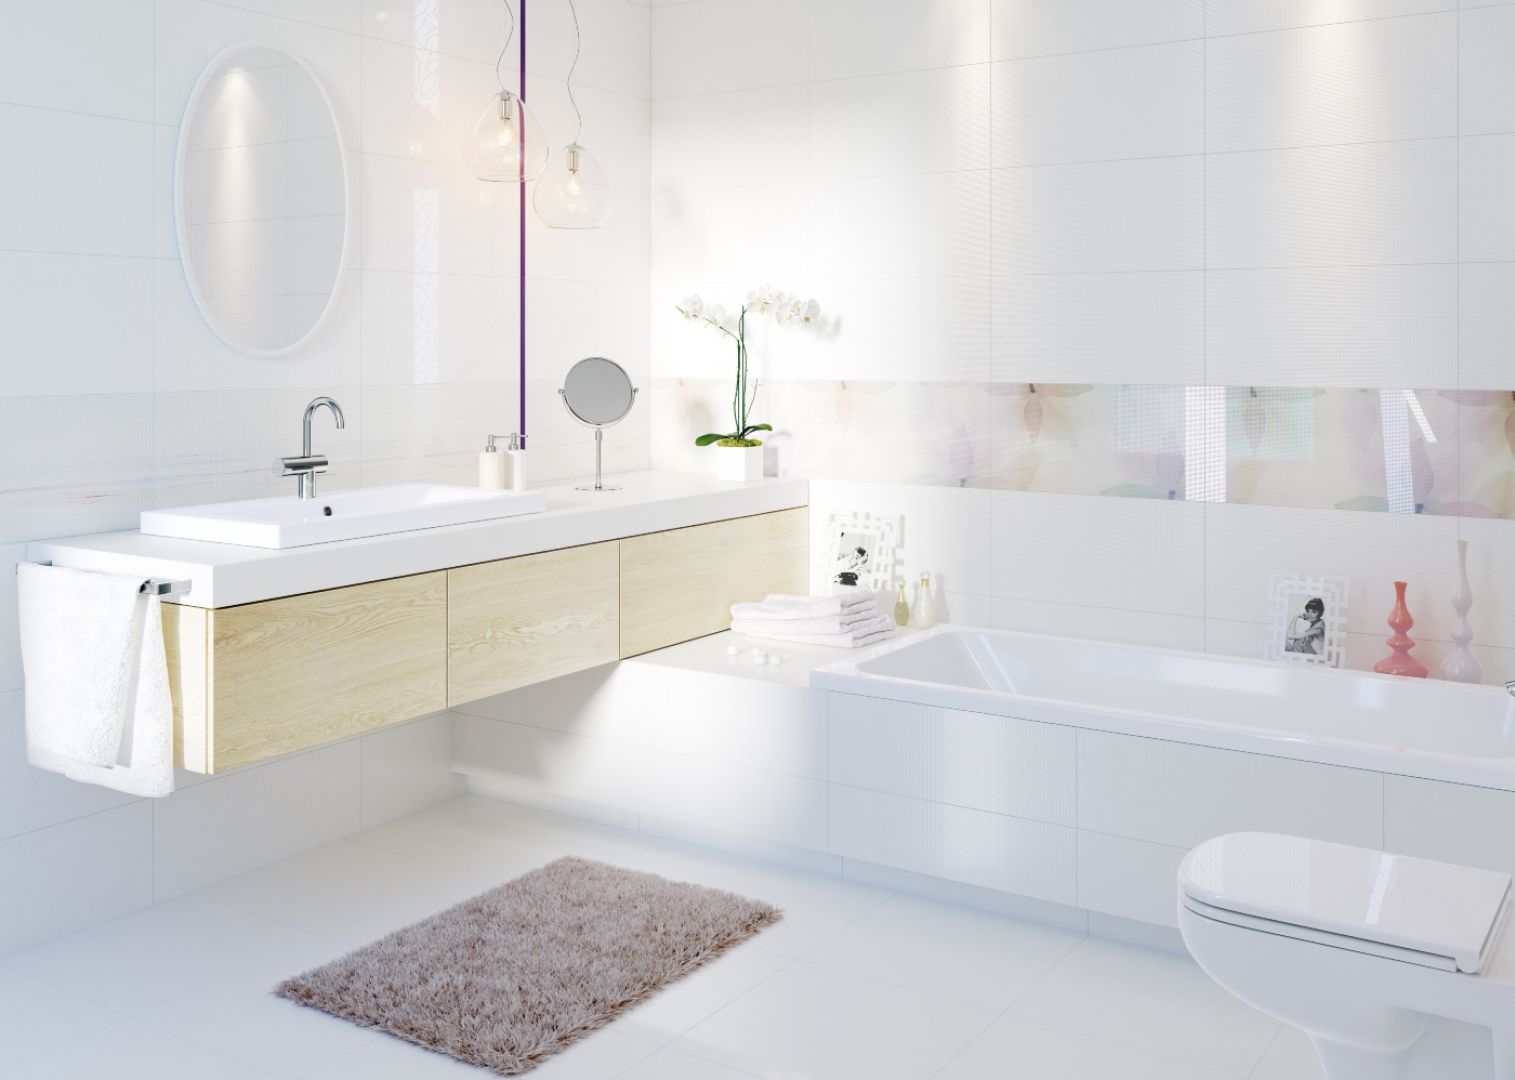 Modna łazienka utrzymana w białej tonacji. Aranżację pięknie przełamano elementami z drewna. Fot. Cersanit 